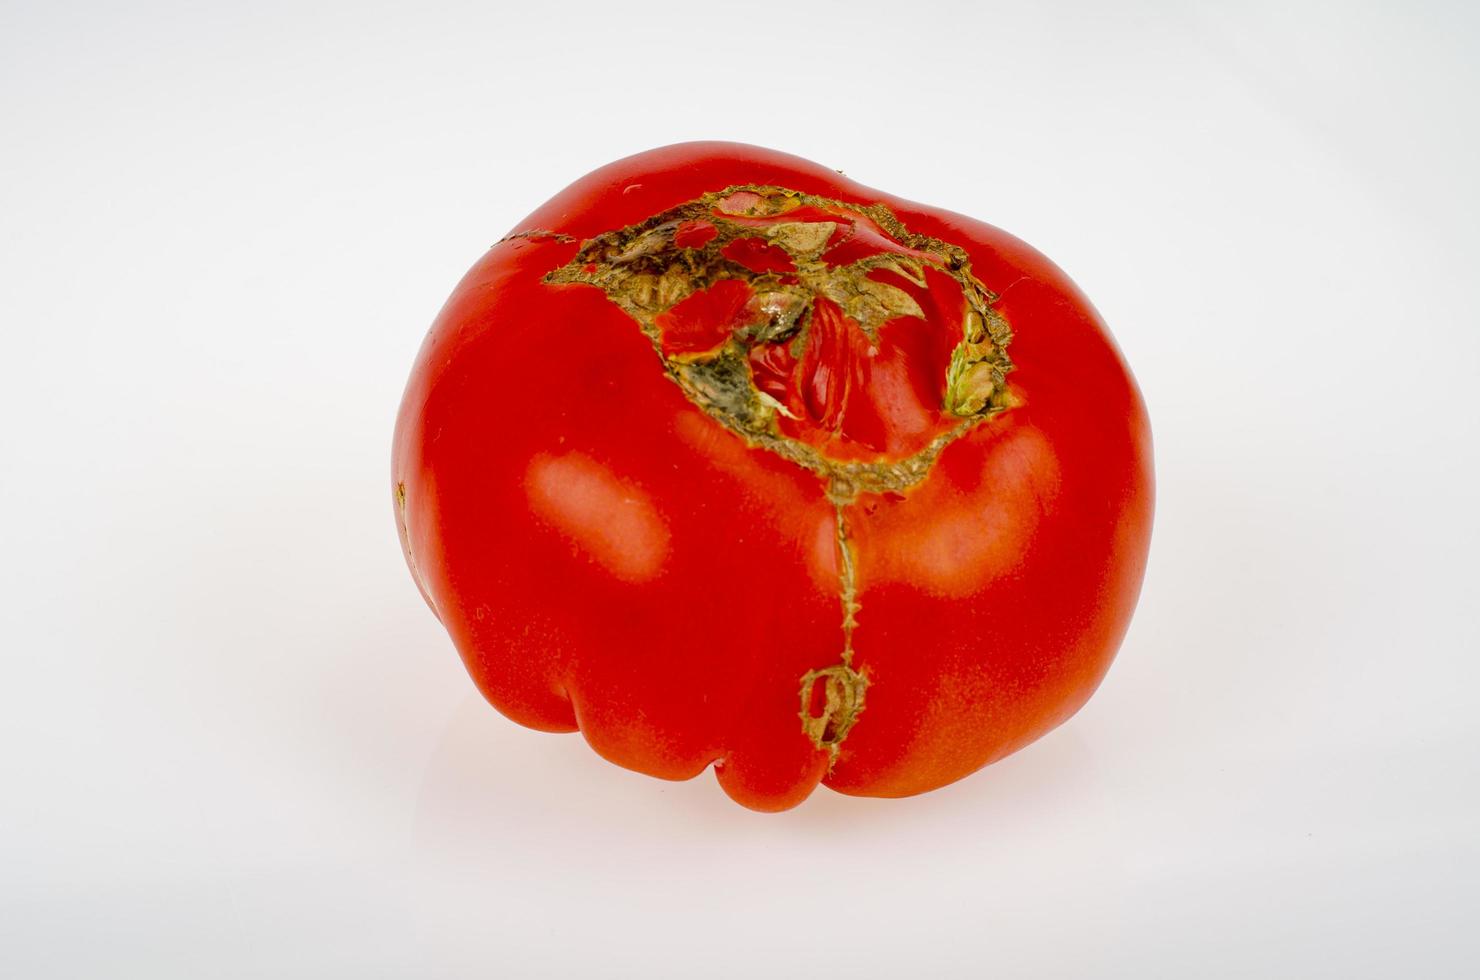 enfermedades de los tomates, pudrición superior en frutas. foto de estudio